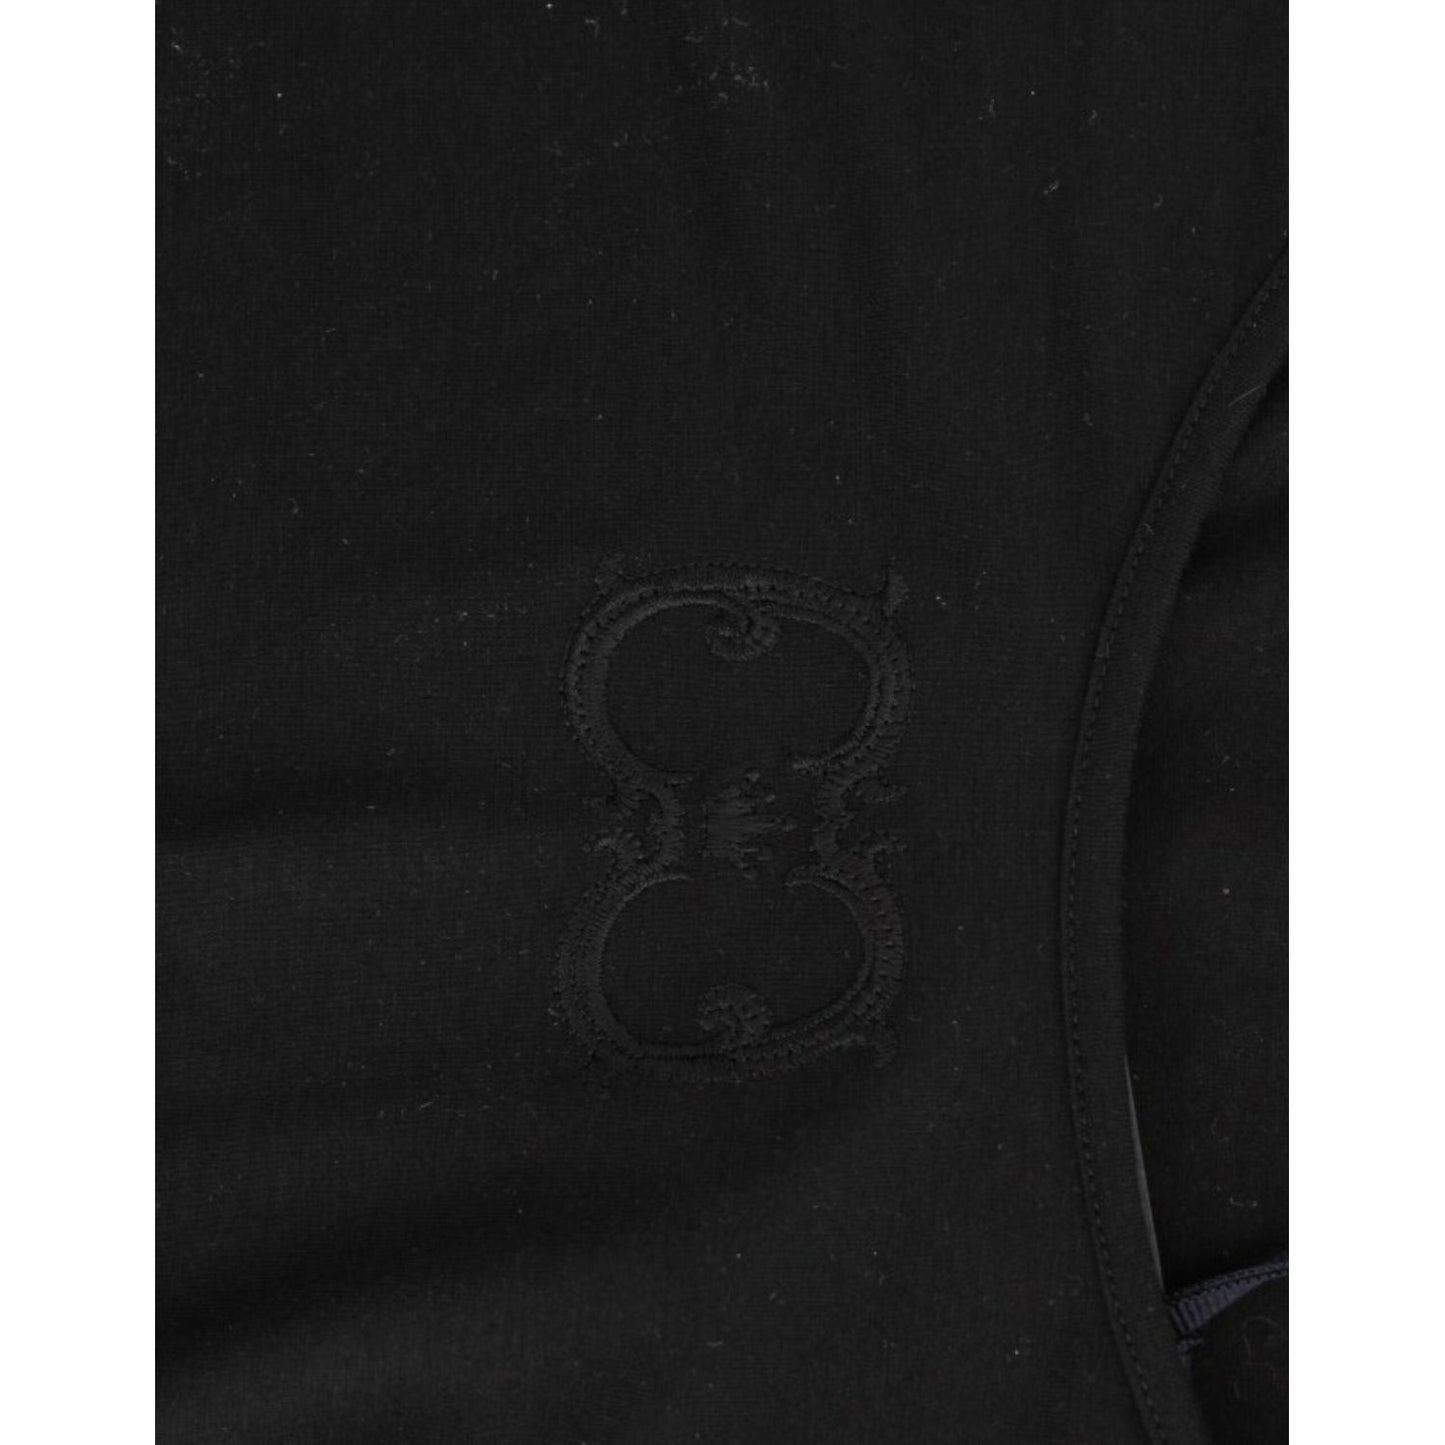 Cavalli Elegant Cap Sleeve Black Top black-cotton-top